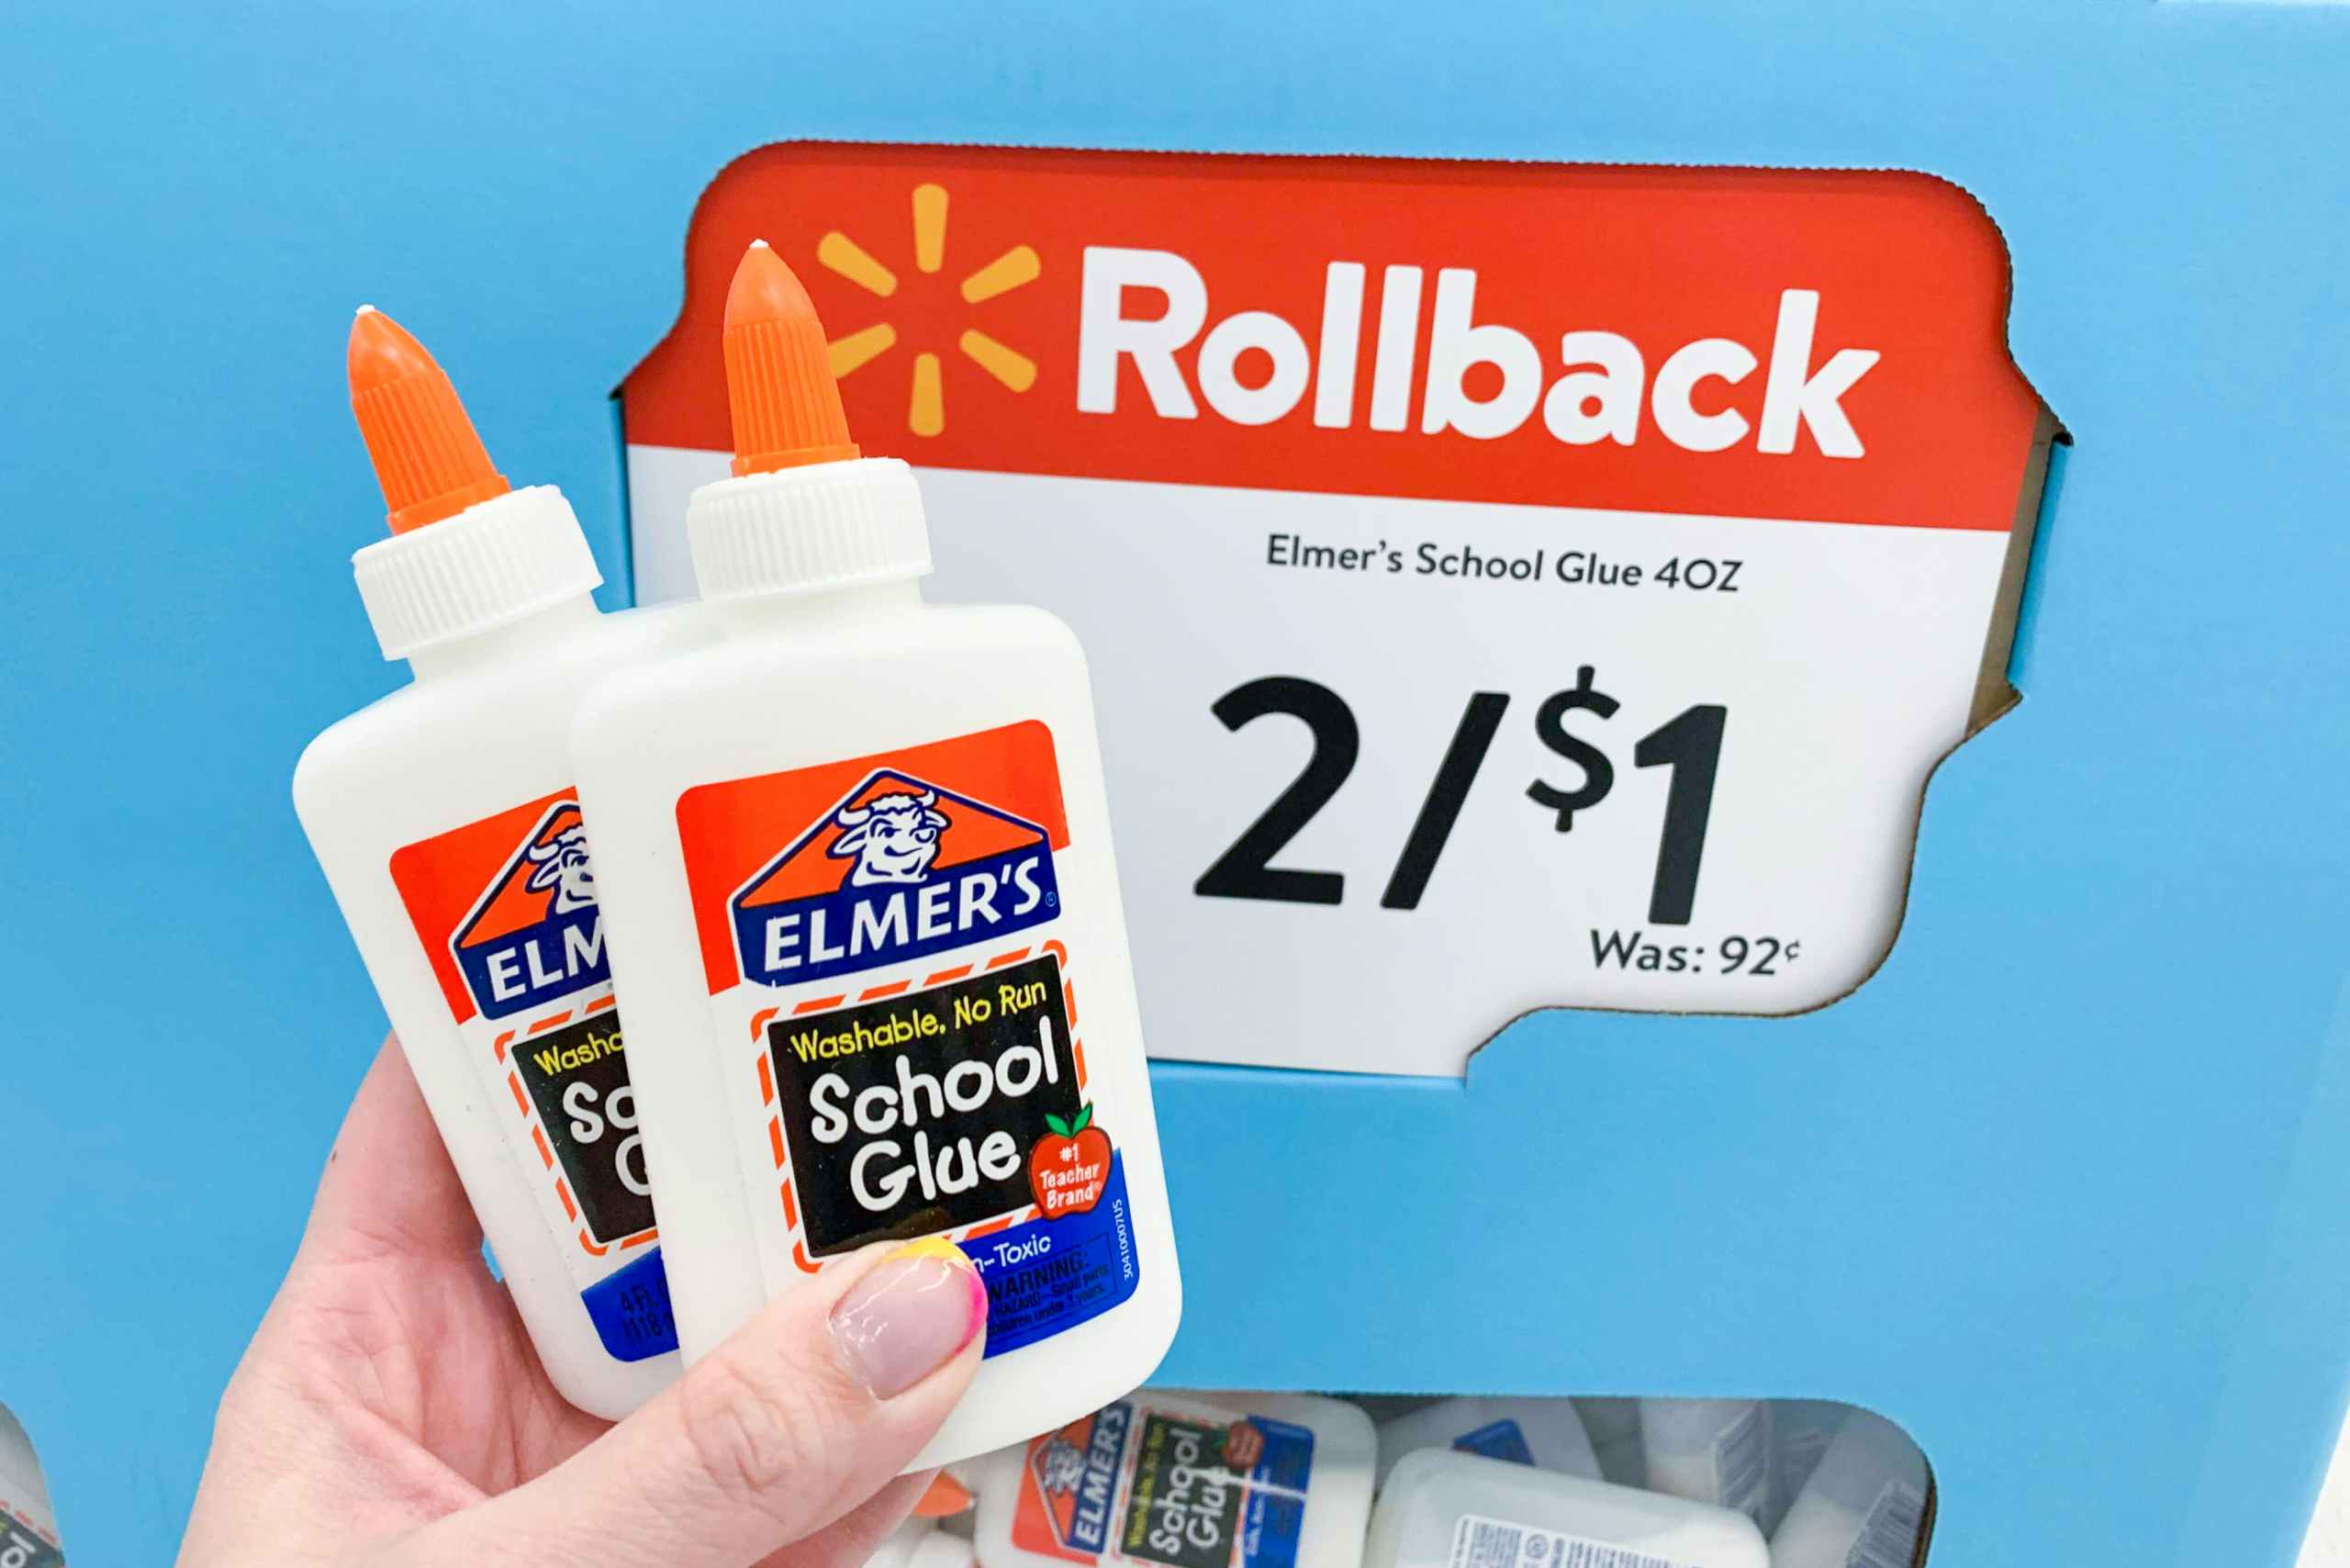 Elmer's Liquid Glue 12-Pack for $10